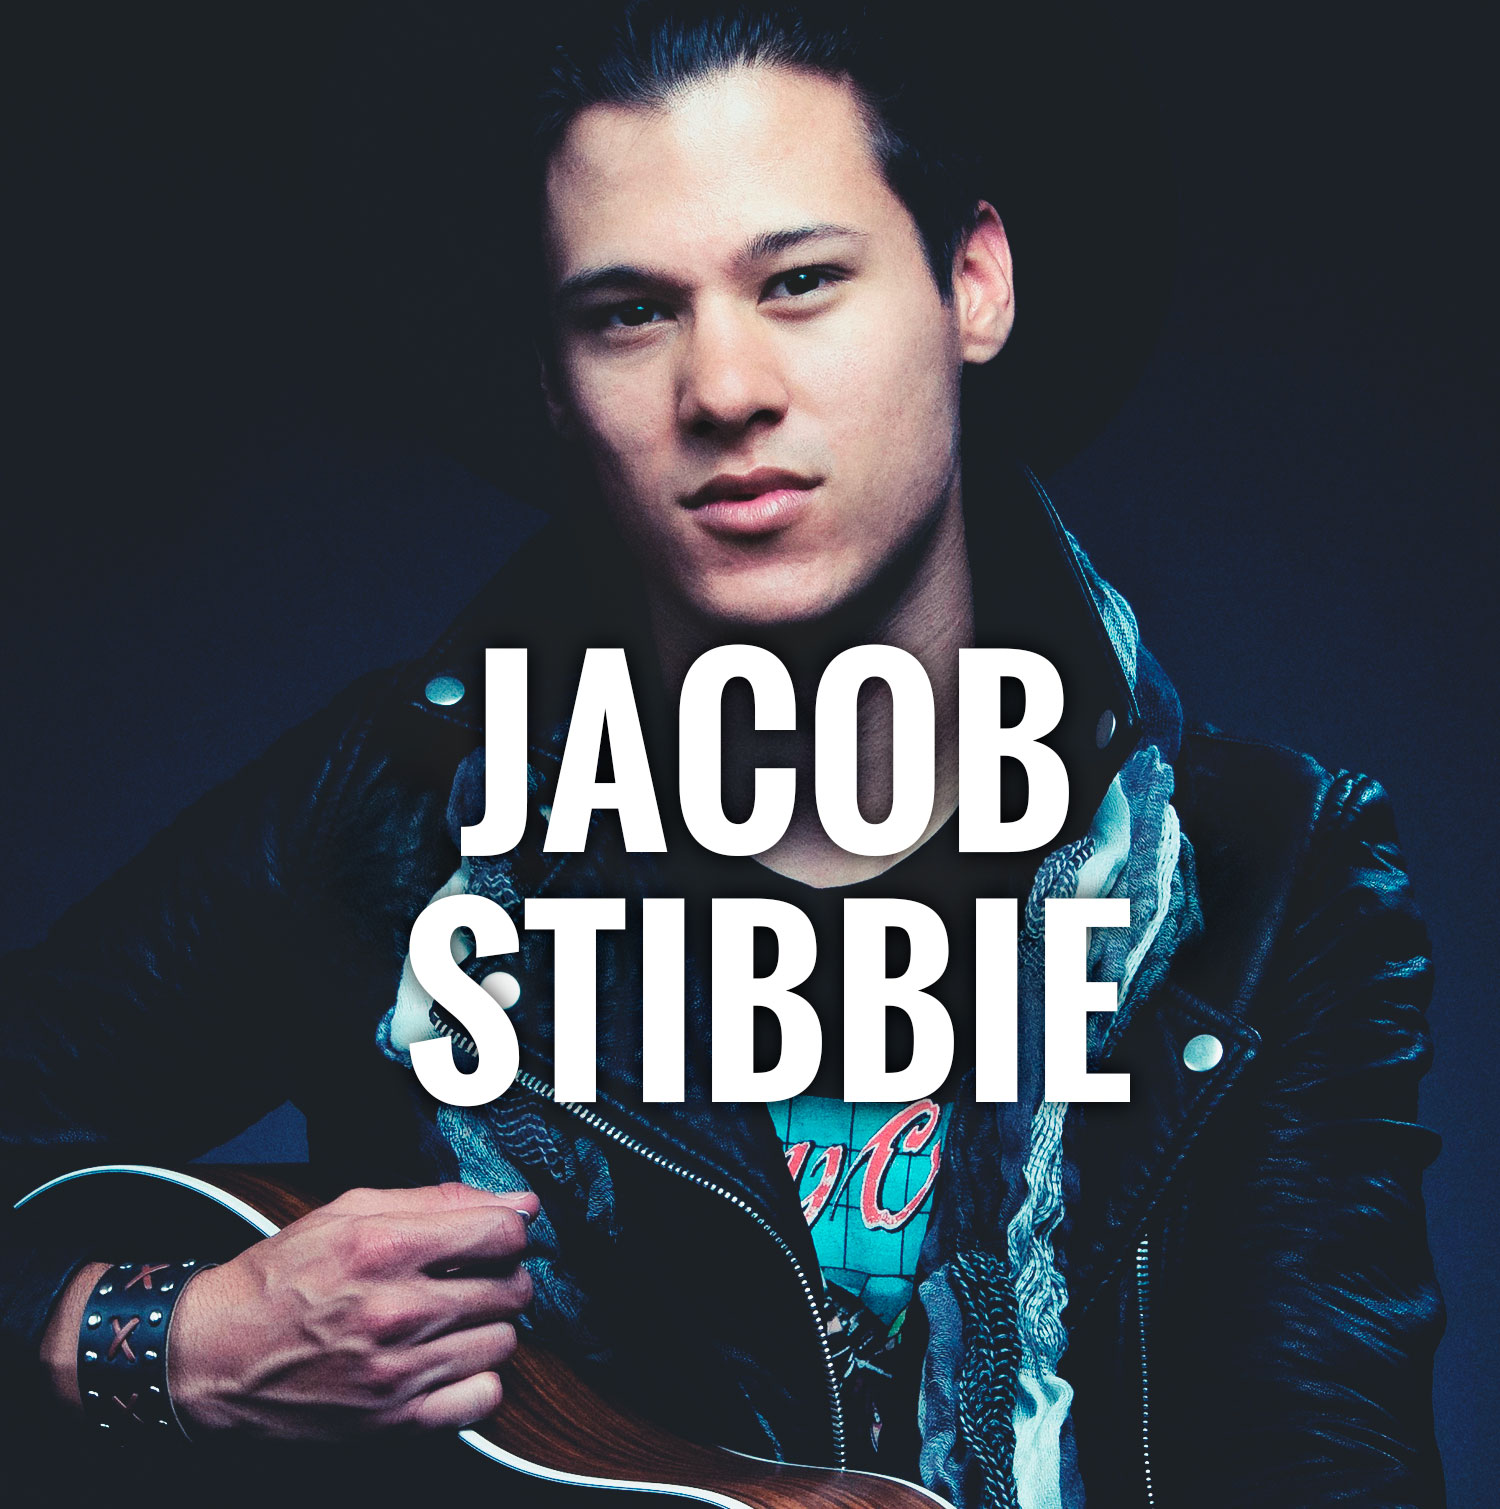 Jacob Stibbie